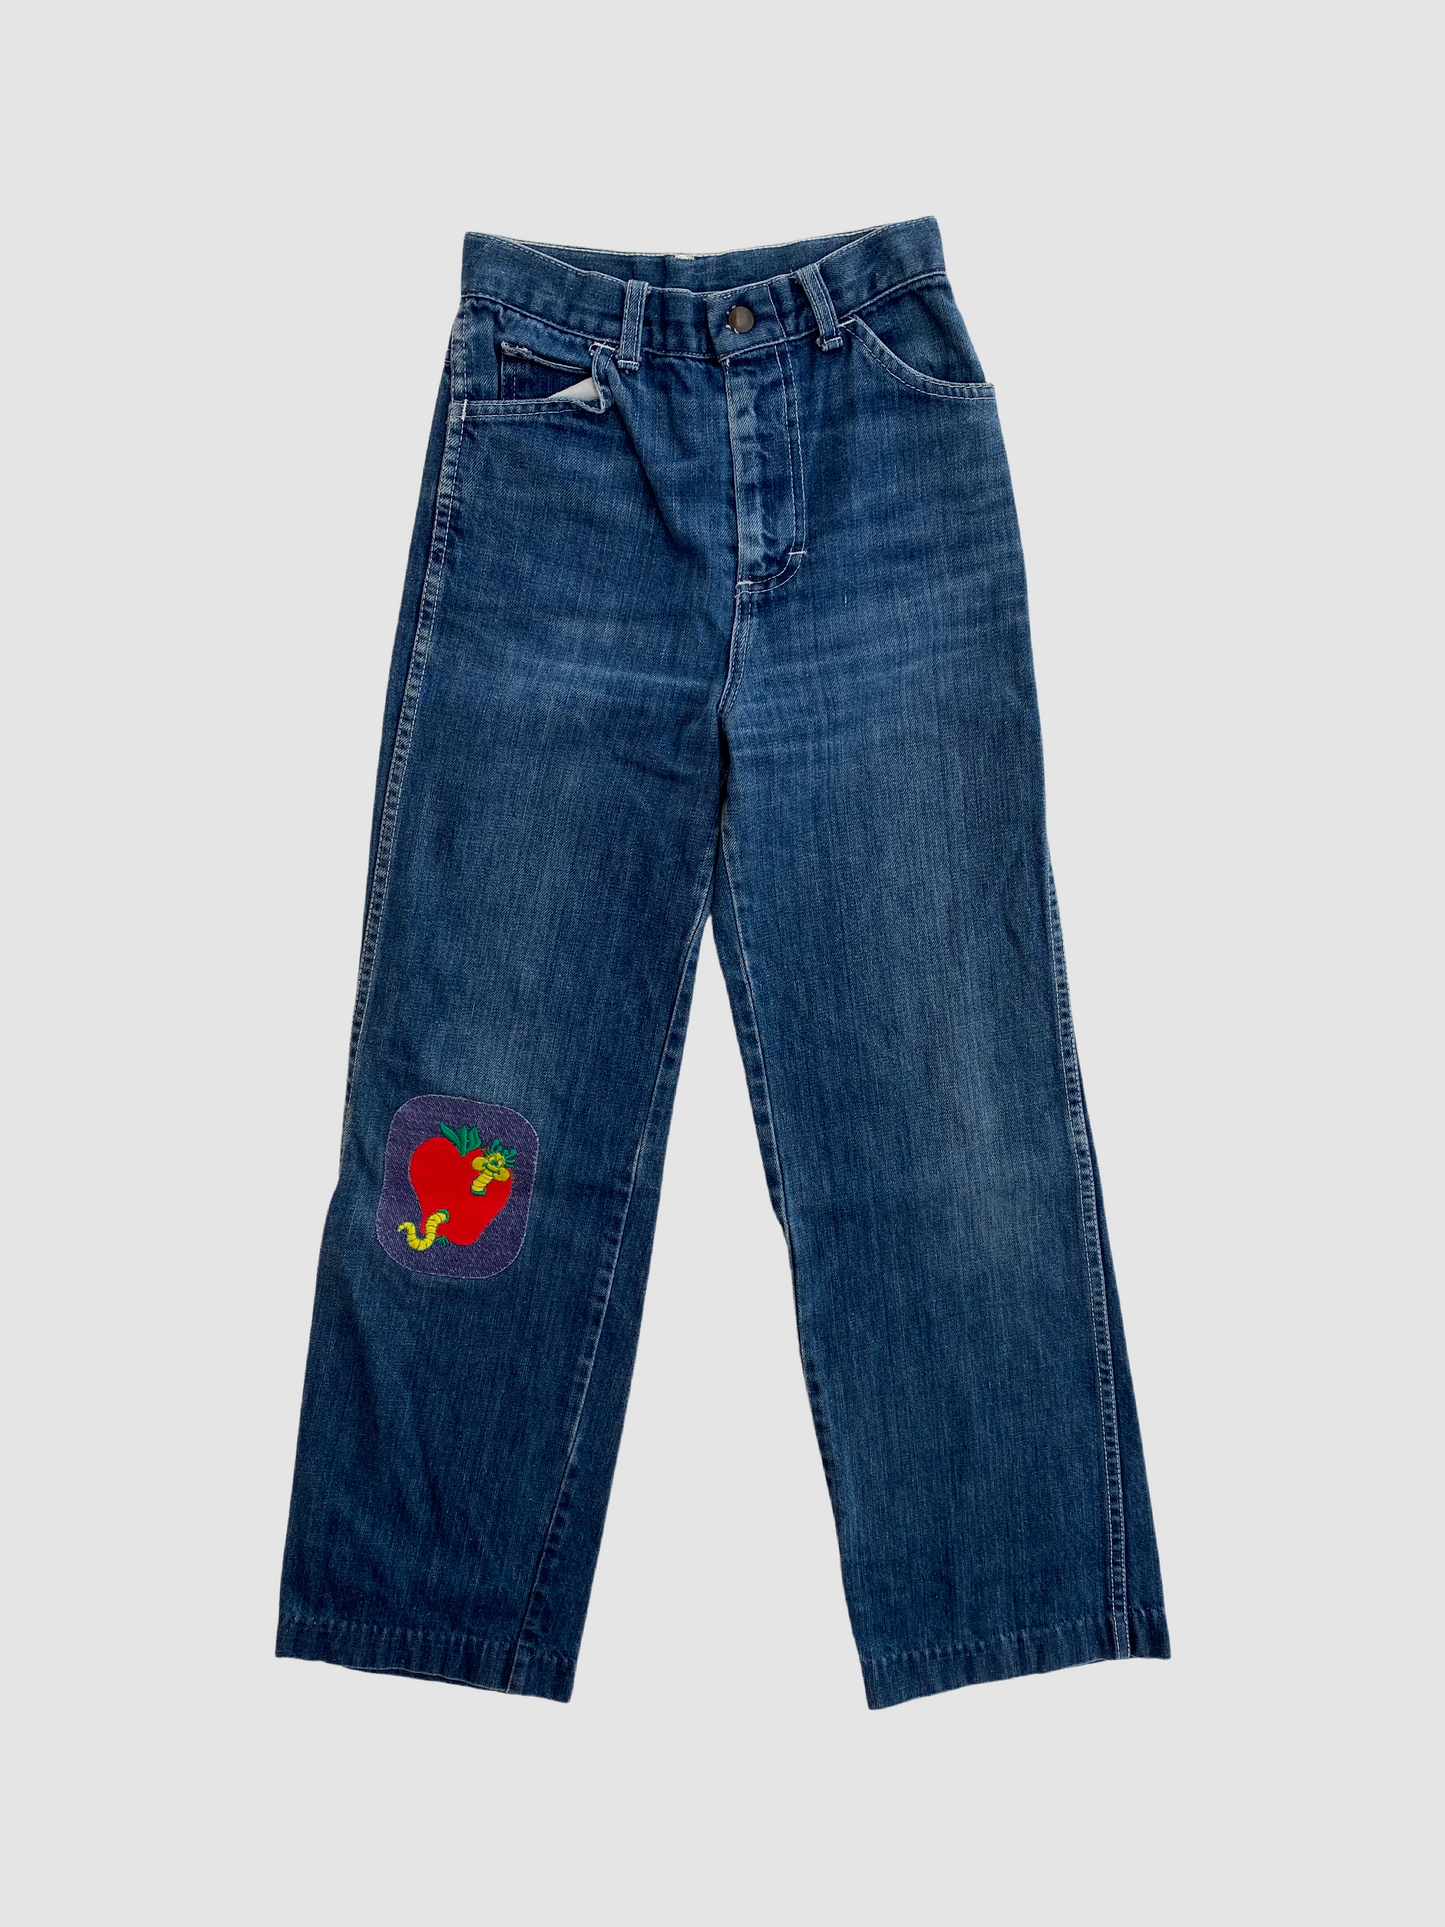 Vintage Kids Jeans W/ Patch